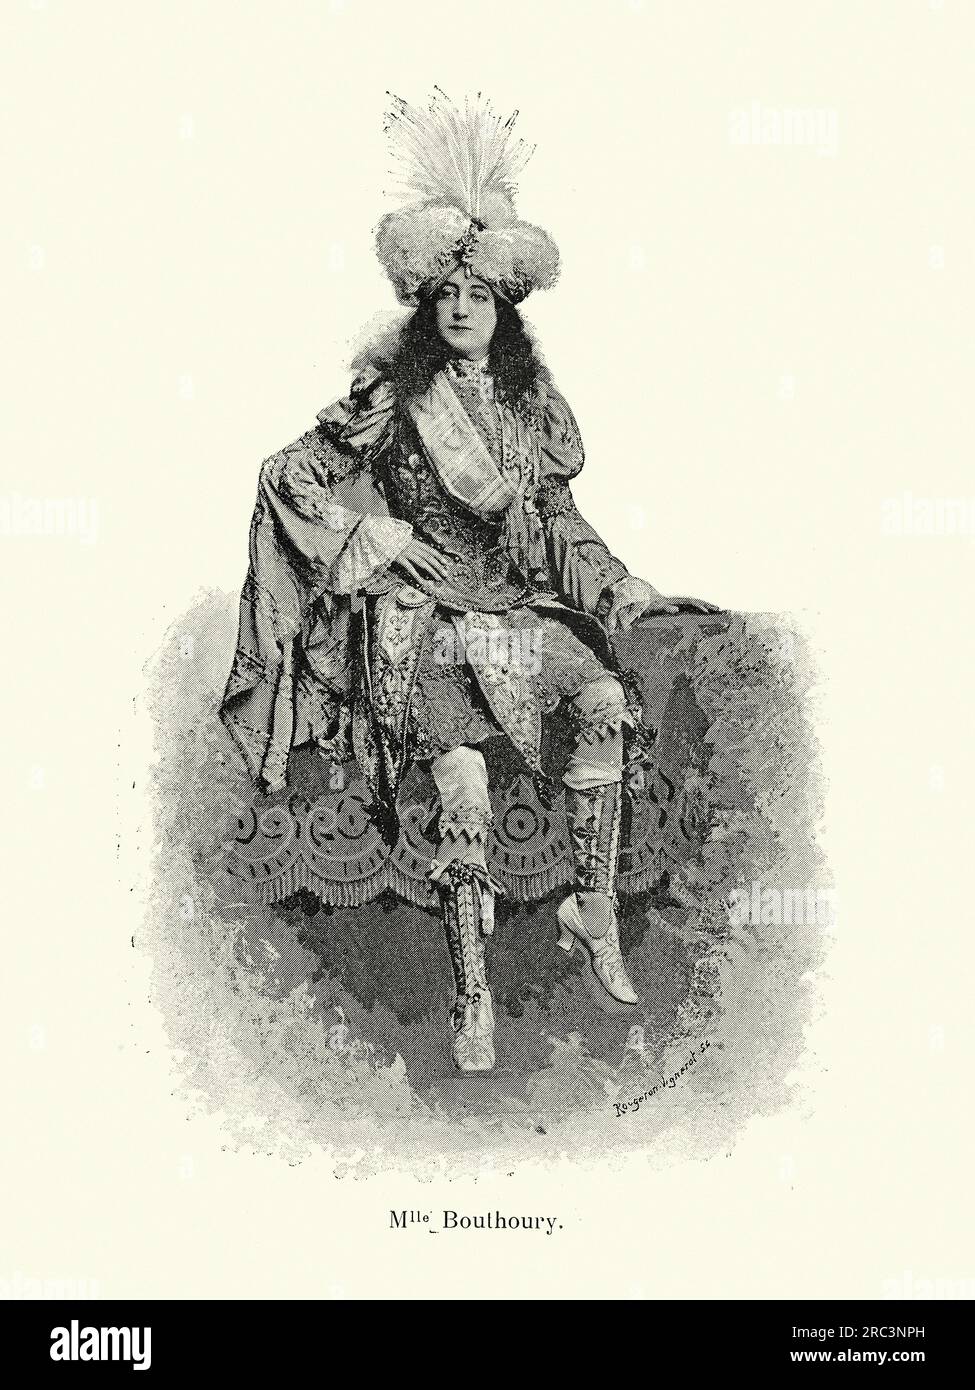 Illustration vintage d'une ballerine en costume, Mlle Bouthory, française, années 1890, 19e siècle Banque D'Images